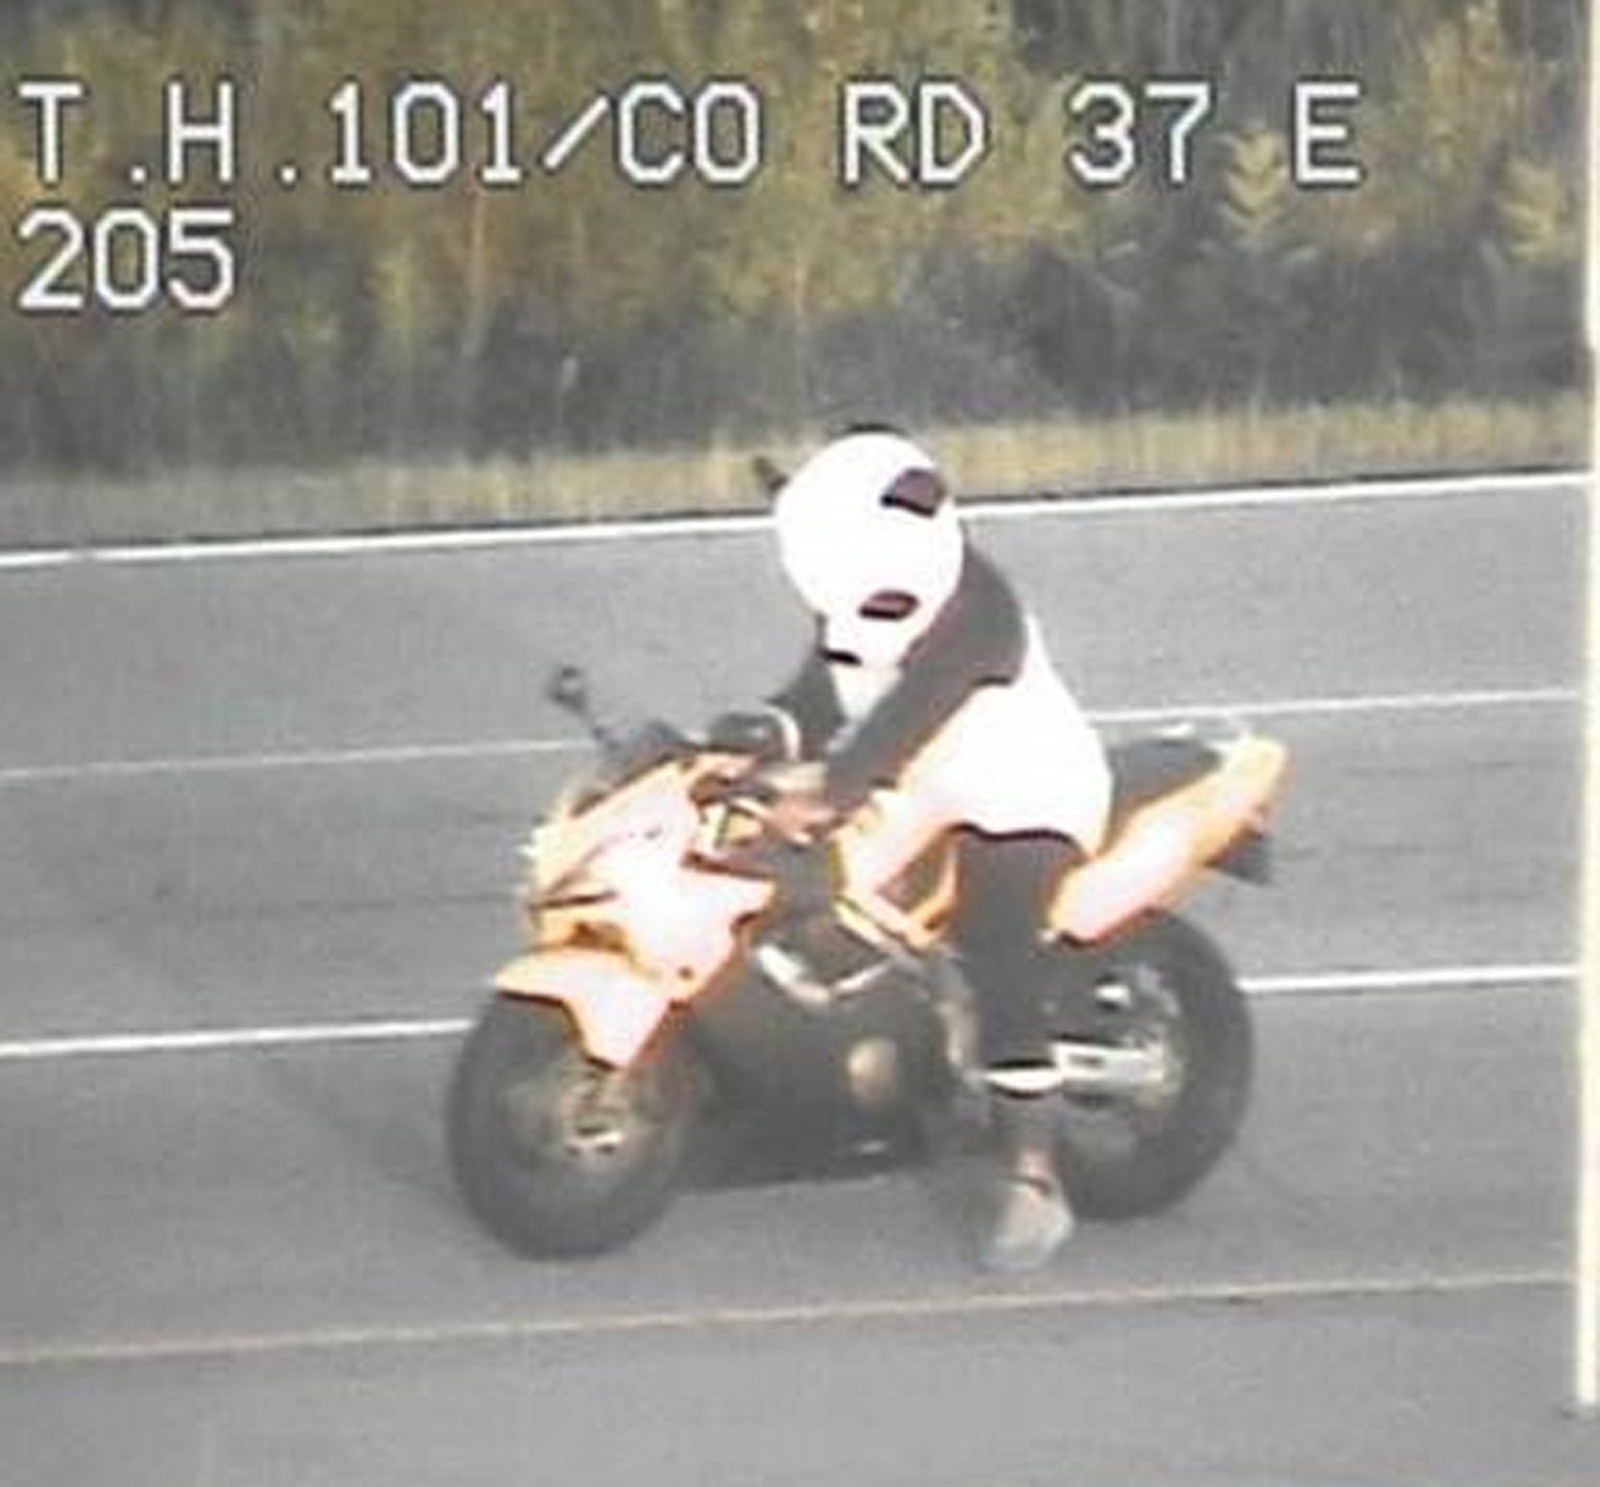 Motociclista que dirigia fantasiado de panda é parado pela polícia nos EUA (Foto: Minesotta State Patrol/Twitter)